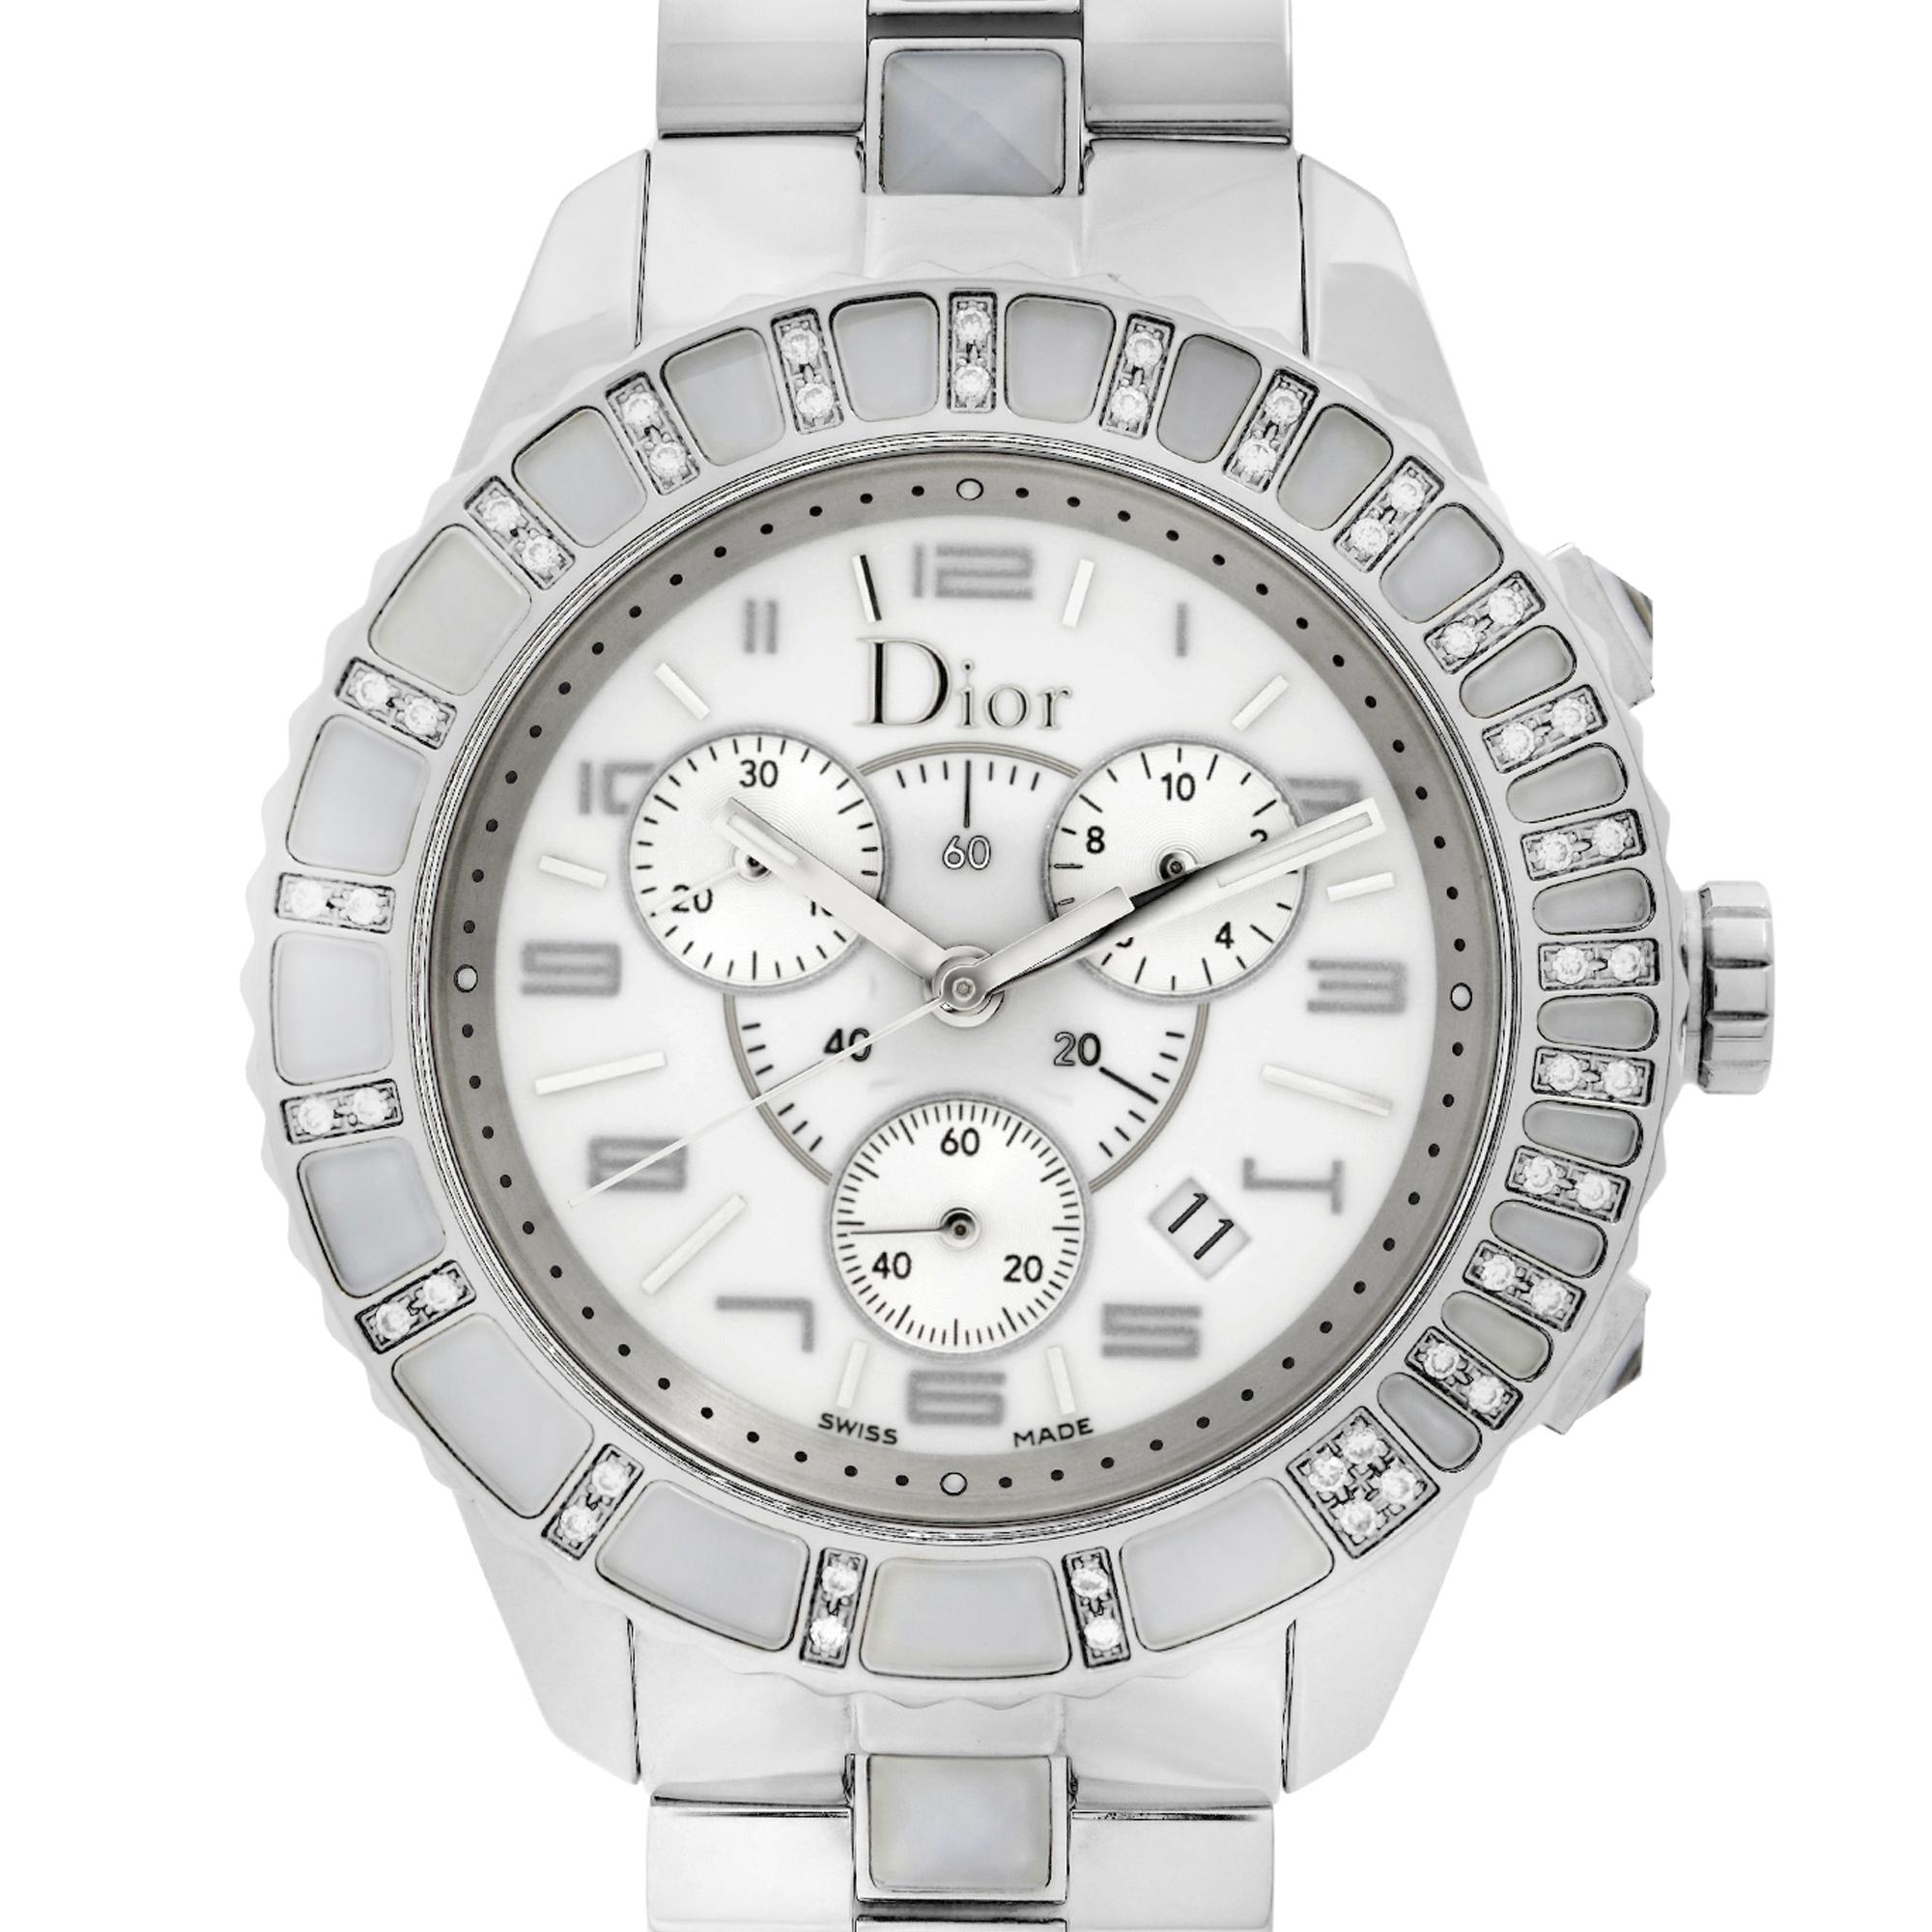 Anzeigemodell Dior Christal Chronograph 39mm Edelstahl Diamant Weißes Zifferblatt Quarz Uhr CD114311M001. Dieser schöne Zeitmesser verfügt über: Edelstahlgehäuse und -armband mit keramischen Mittelgliedern, einseitig drehbare Lünette mit 48